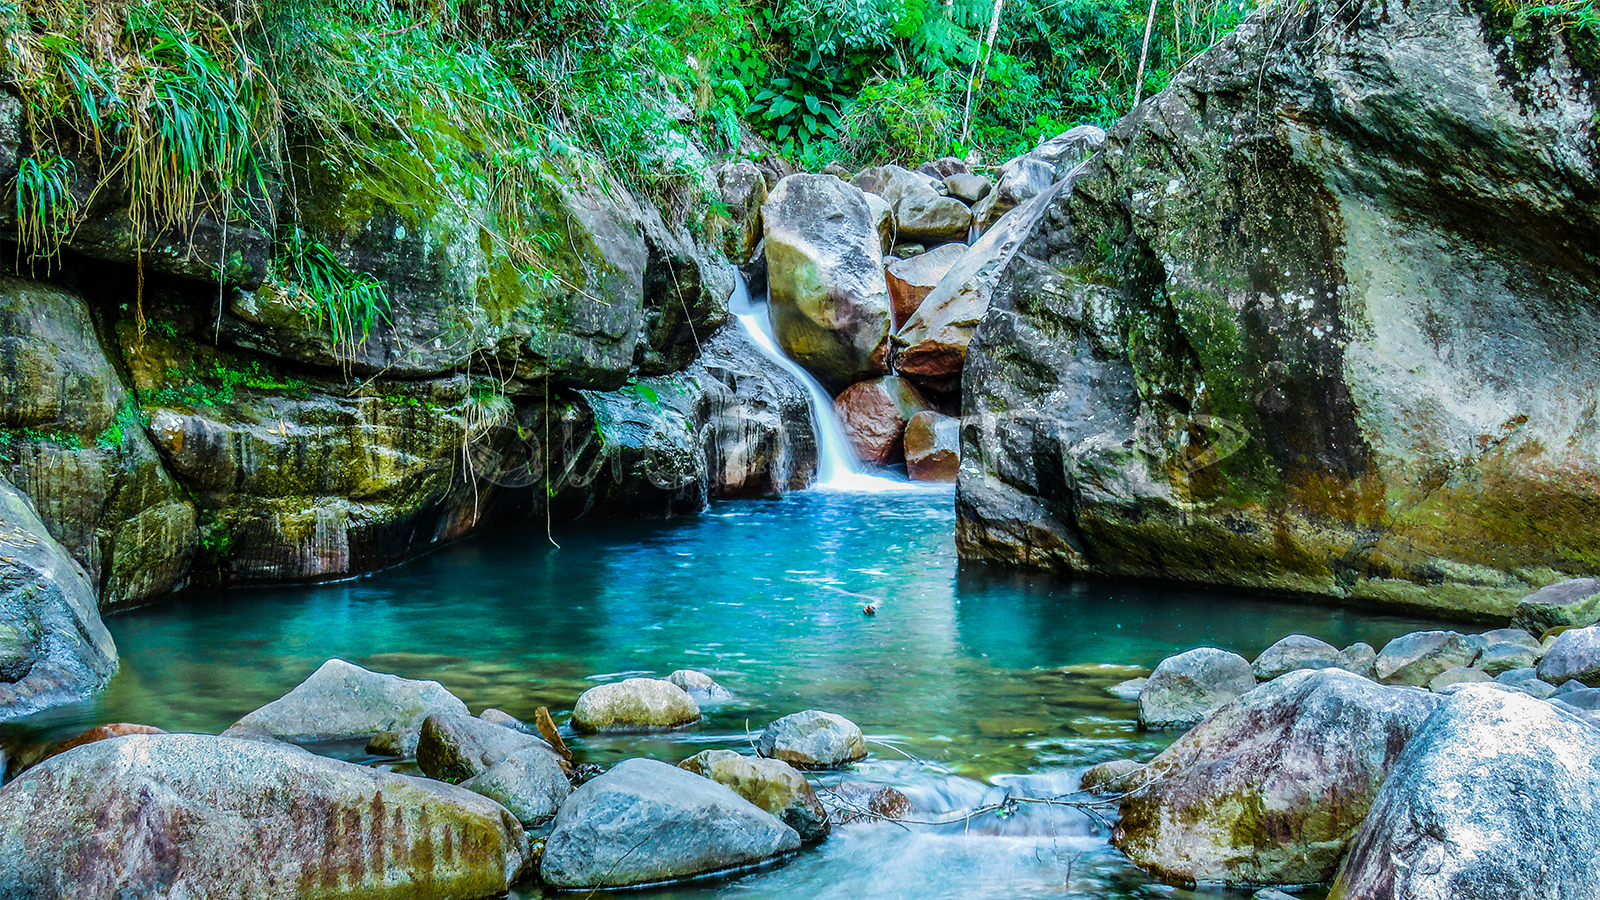 5 lugares no Brasil para nadar em águas abertas